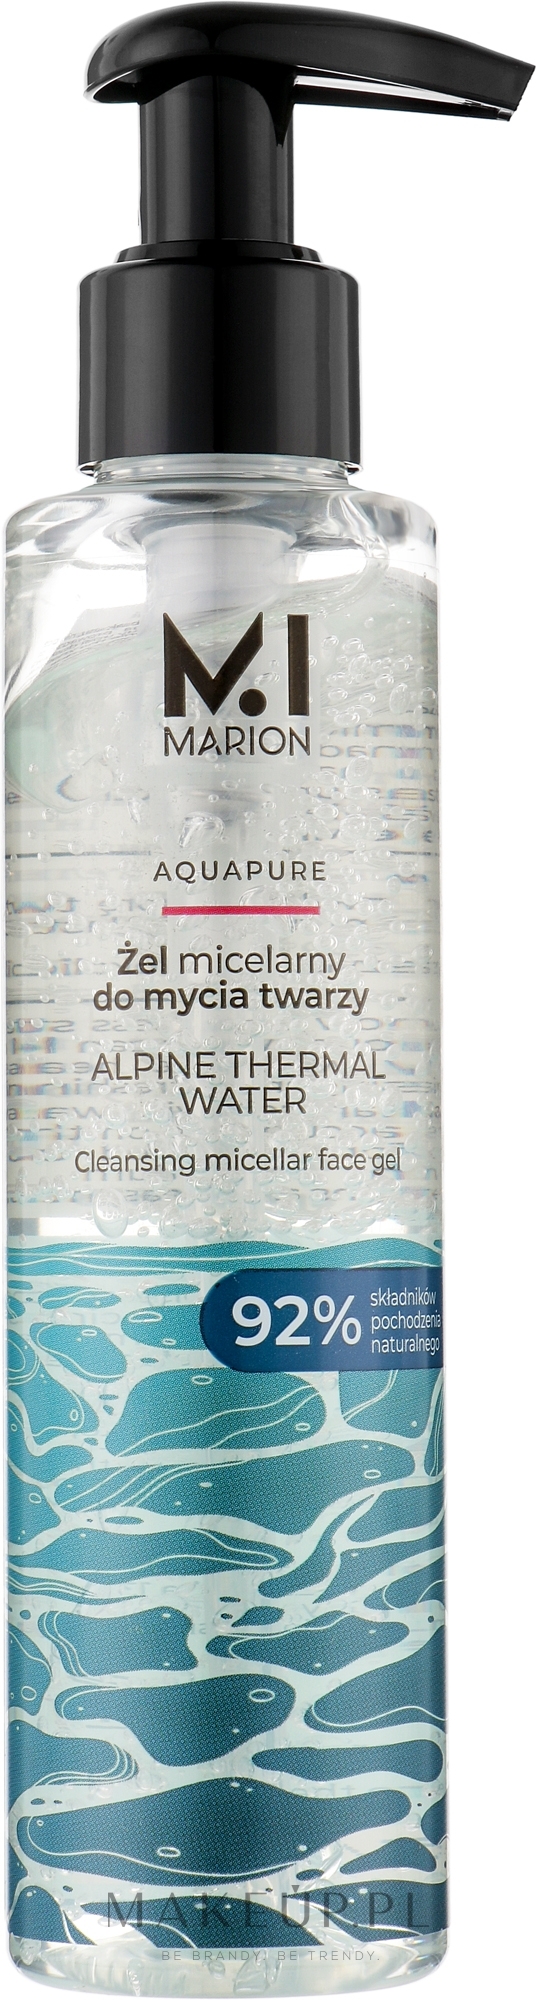 Micelarny żel oczyszczający z wodą termalną - Marion Aquapure Alpine Thermal Water Micellar Face Gel — Zdjęcie 150 ml